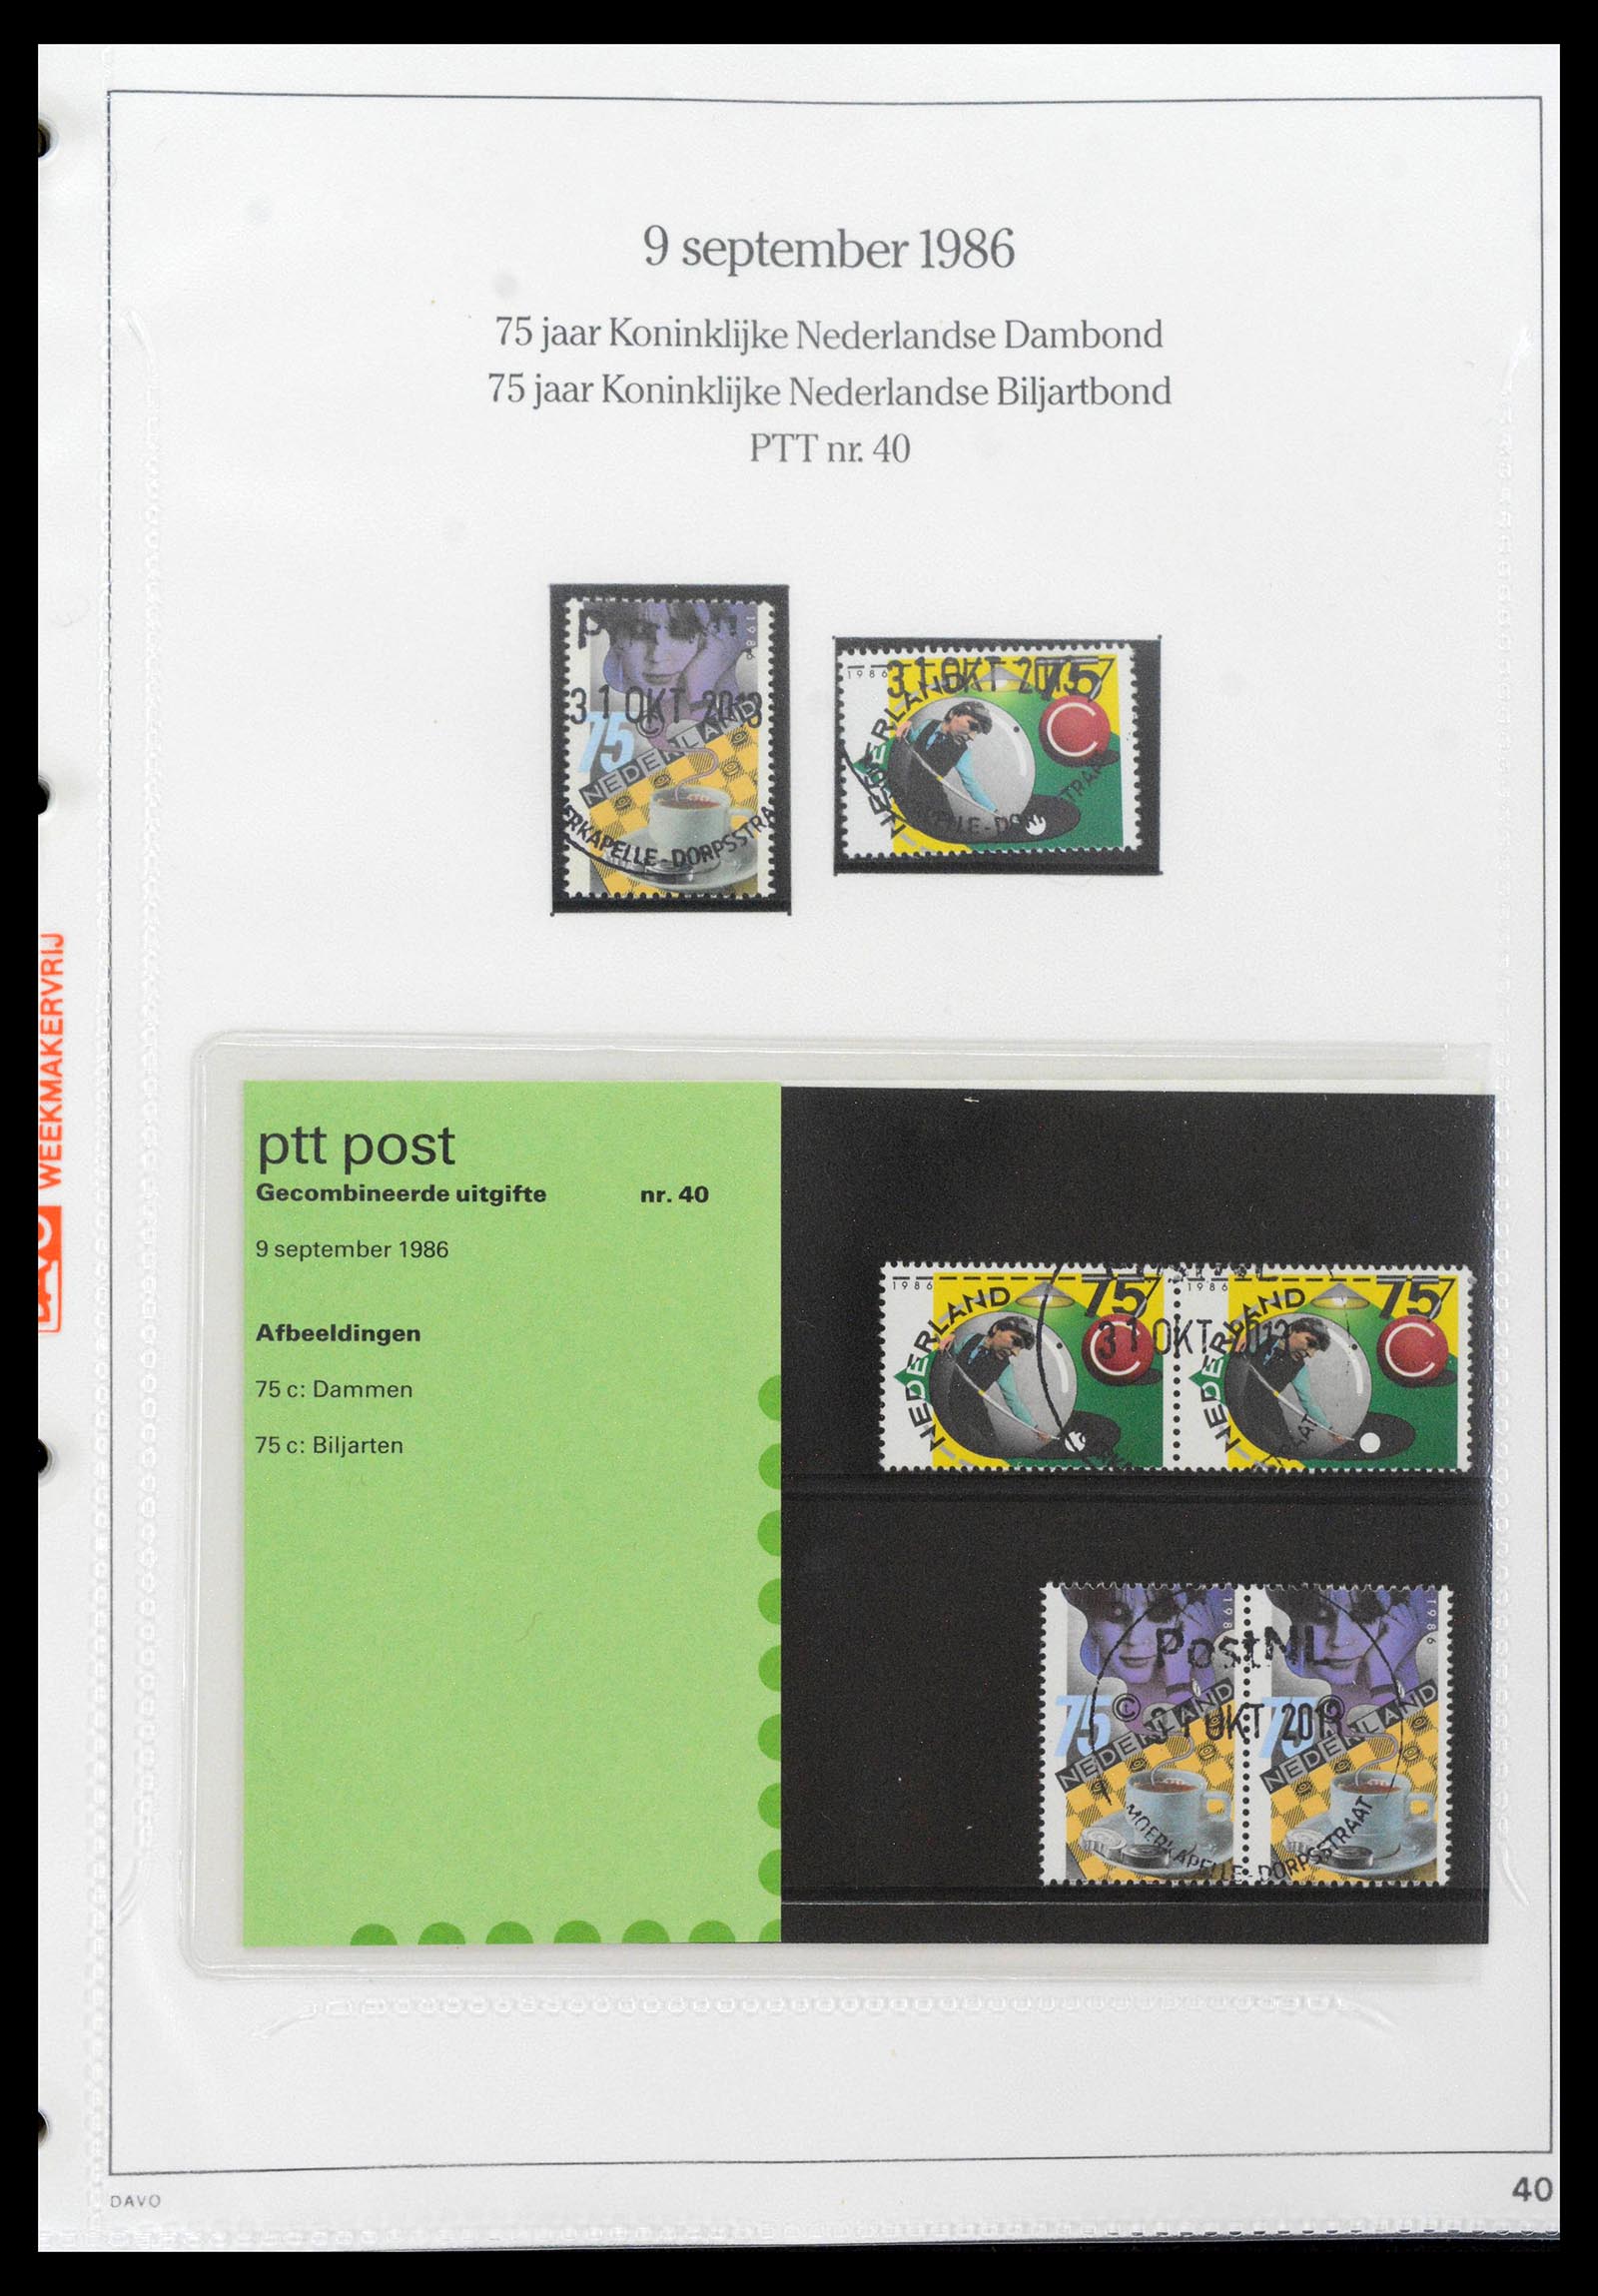 39121 0040 - Stamp collection 39121 Netherlands presentationpacks 1982-2001.